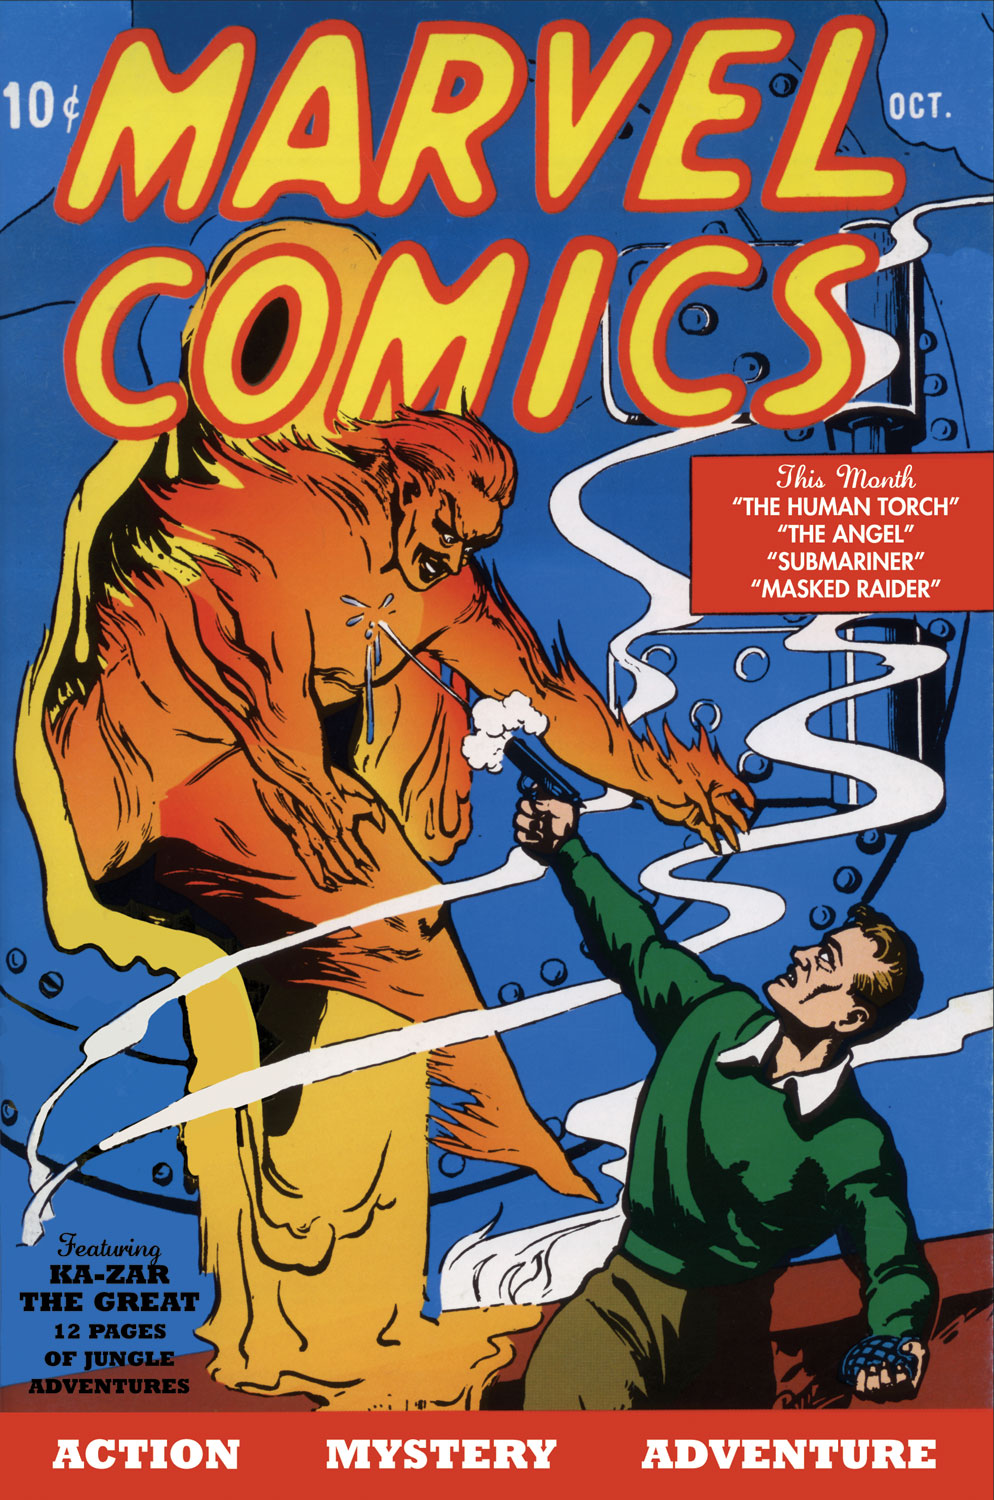 Marvel Comics #1 (October 1939)